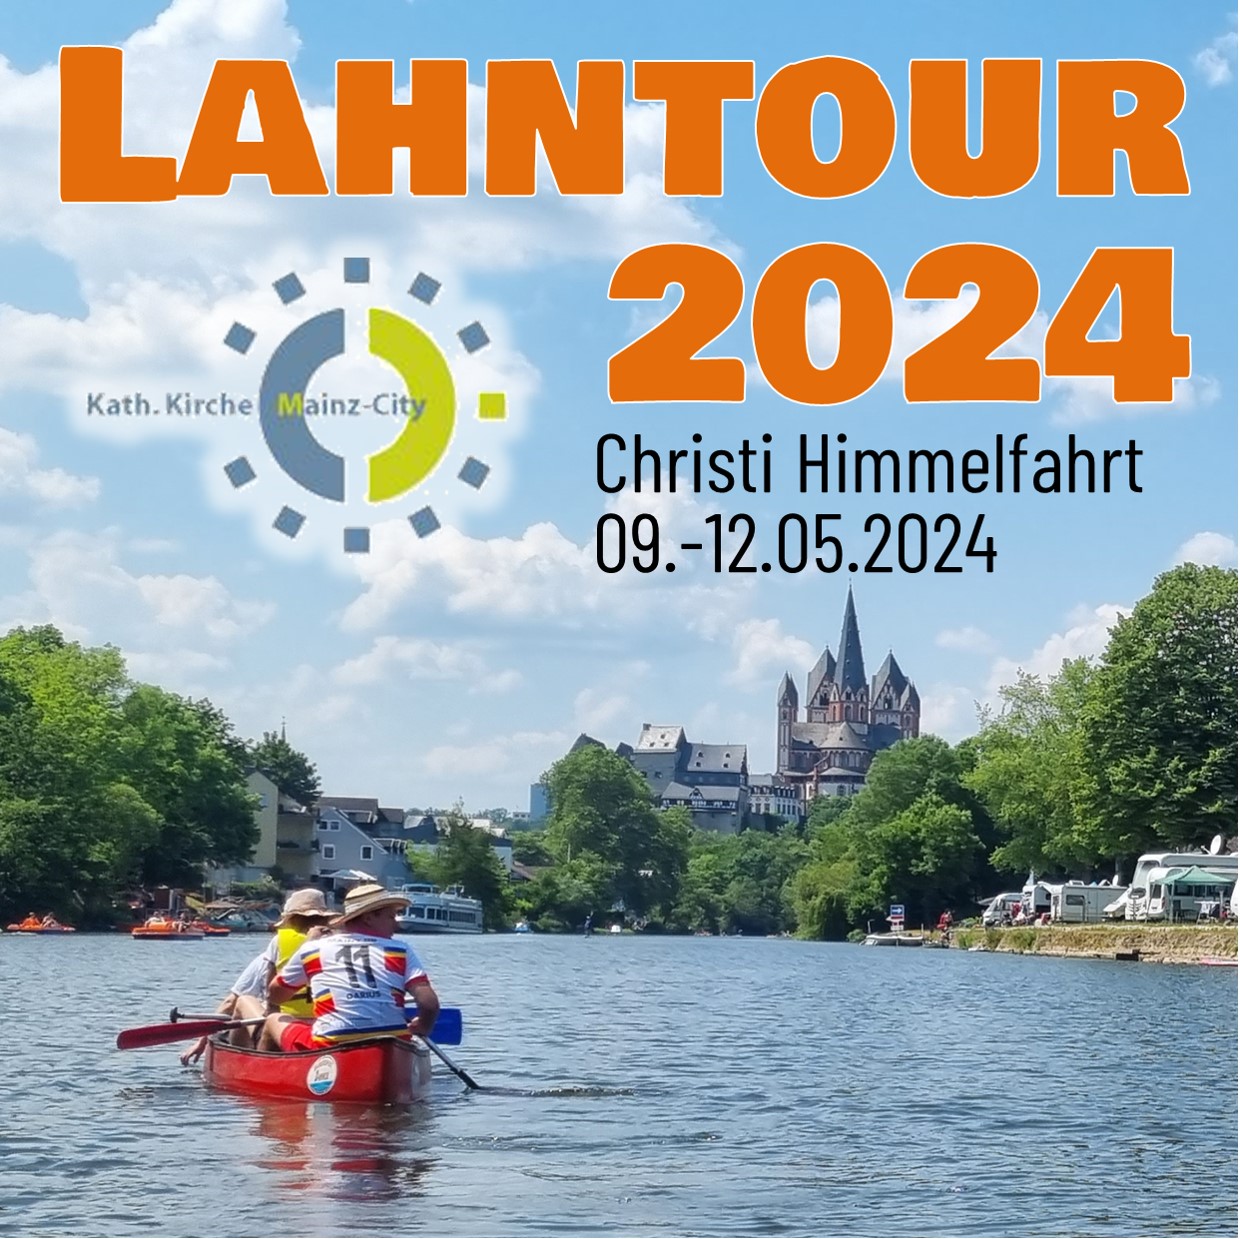 Lahntour 2024 (c) St. Peter